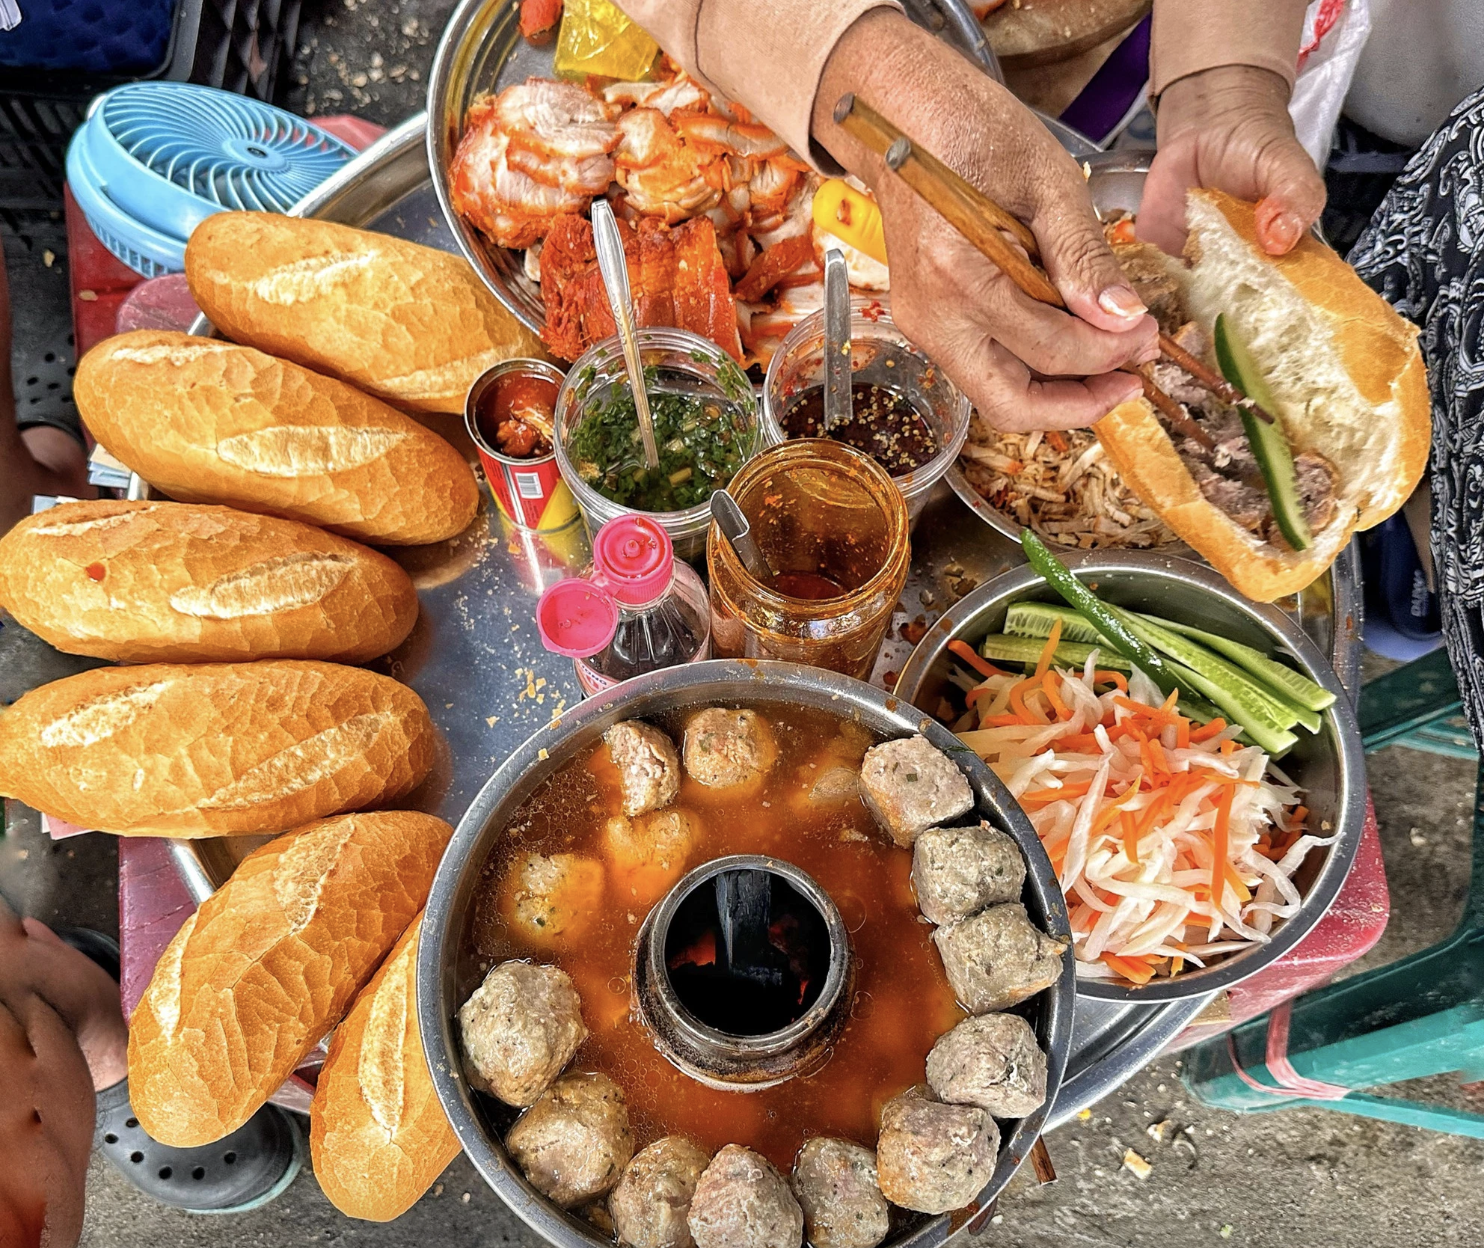 Hôm nay Michelin Guide công bố danh sách quán ăn ở Việt Nam: Bánh mì liệu có đánh rớt như 2023?- Ảnh 3.